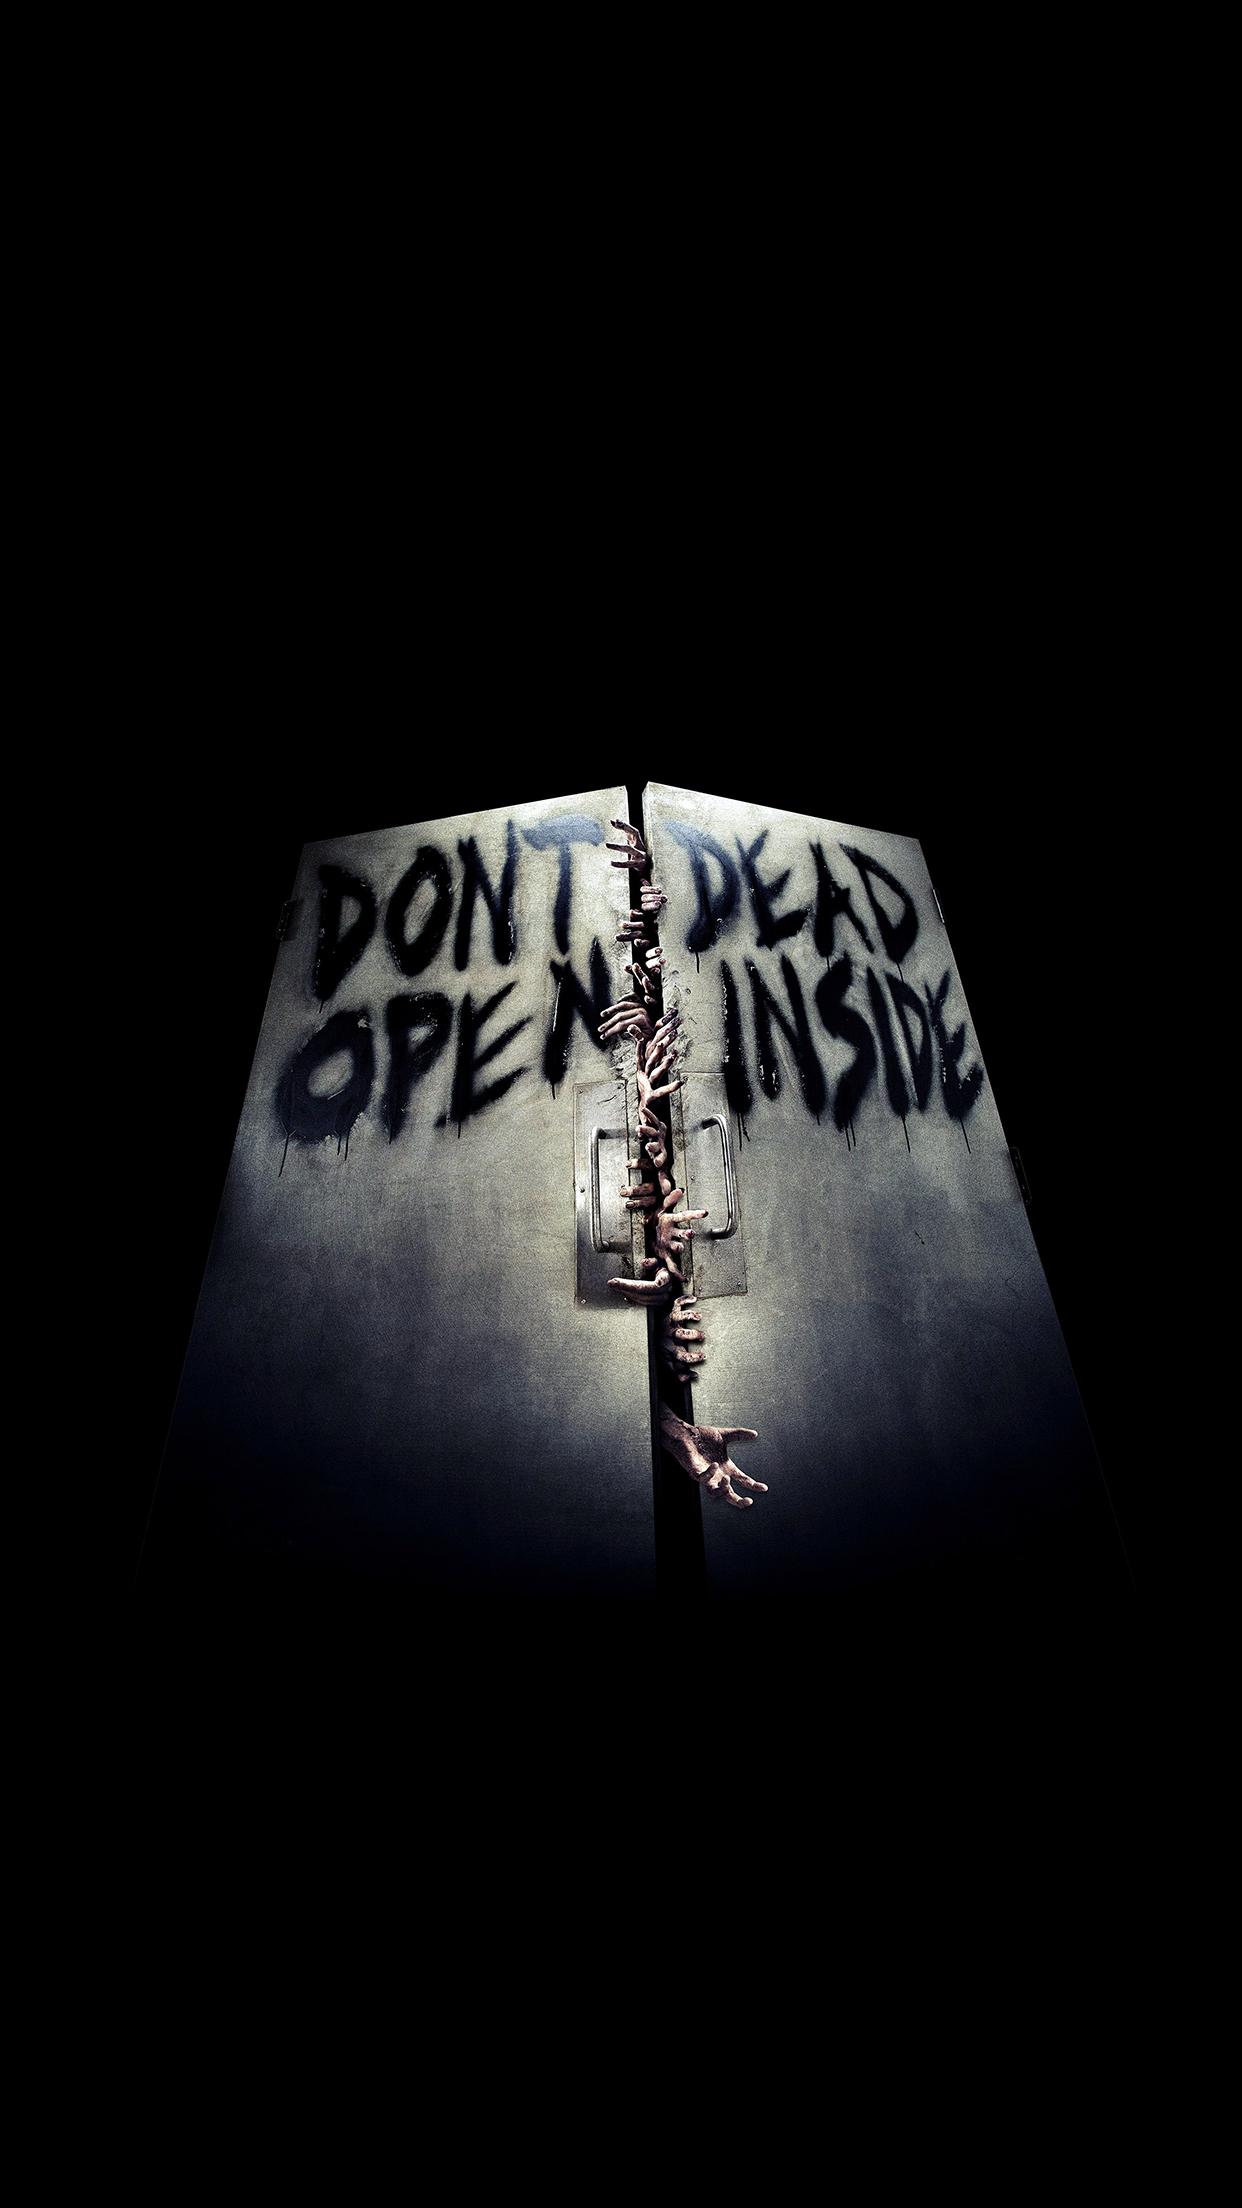 The Walking Dead door Wallpaper for iPhone X, 6